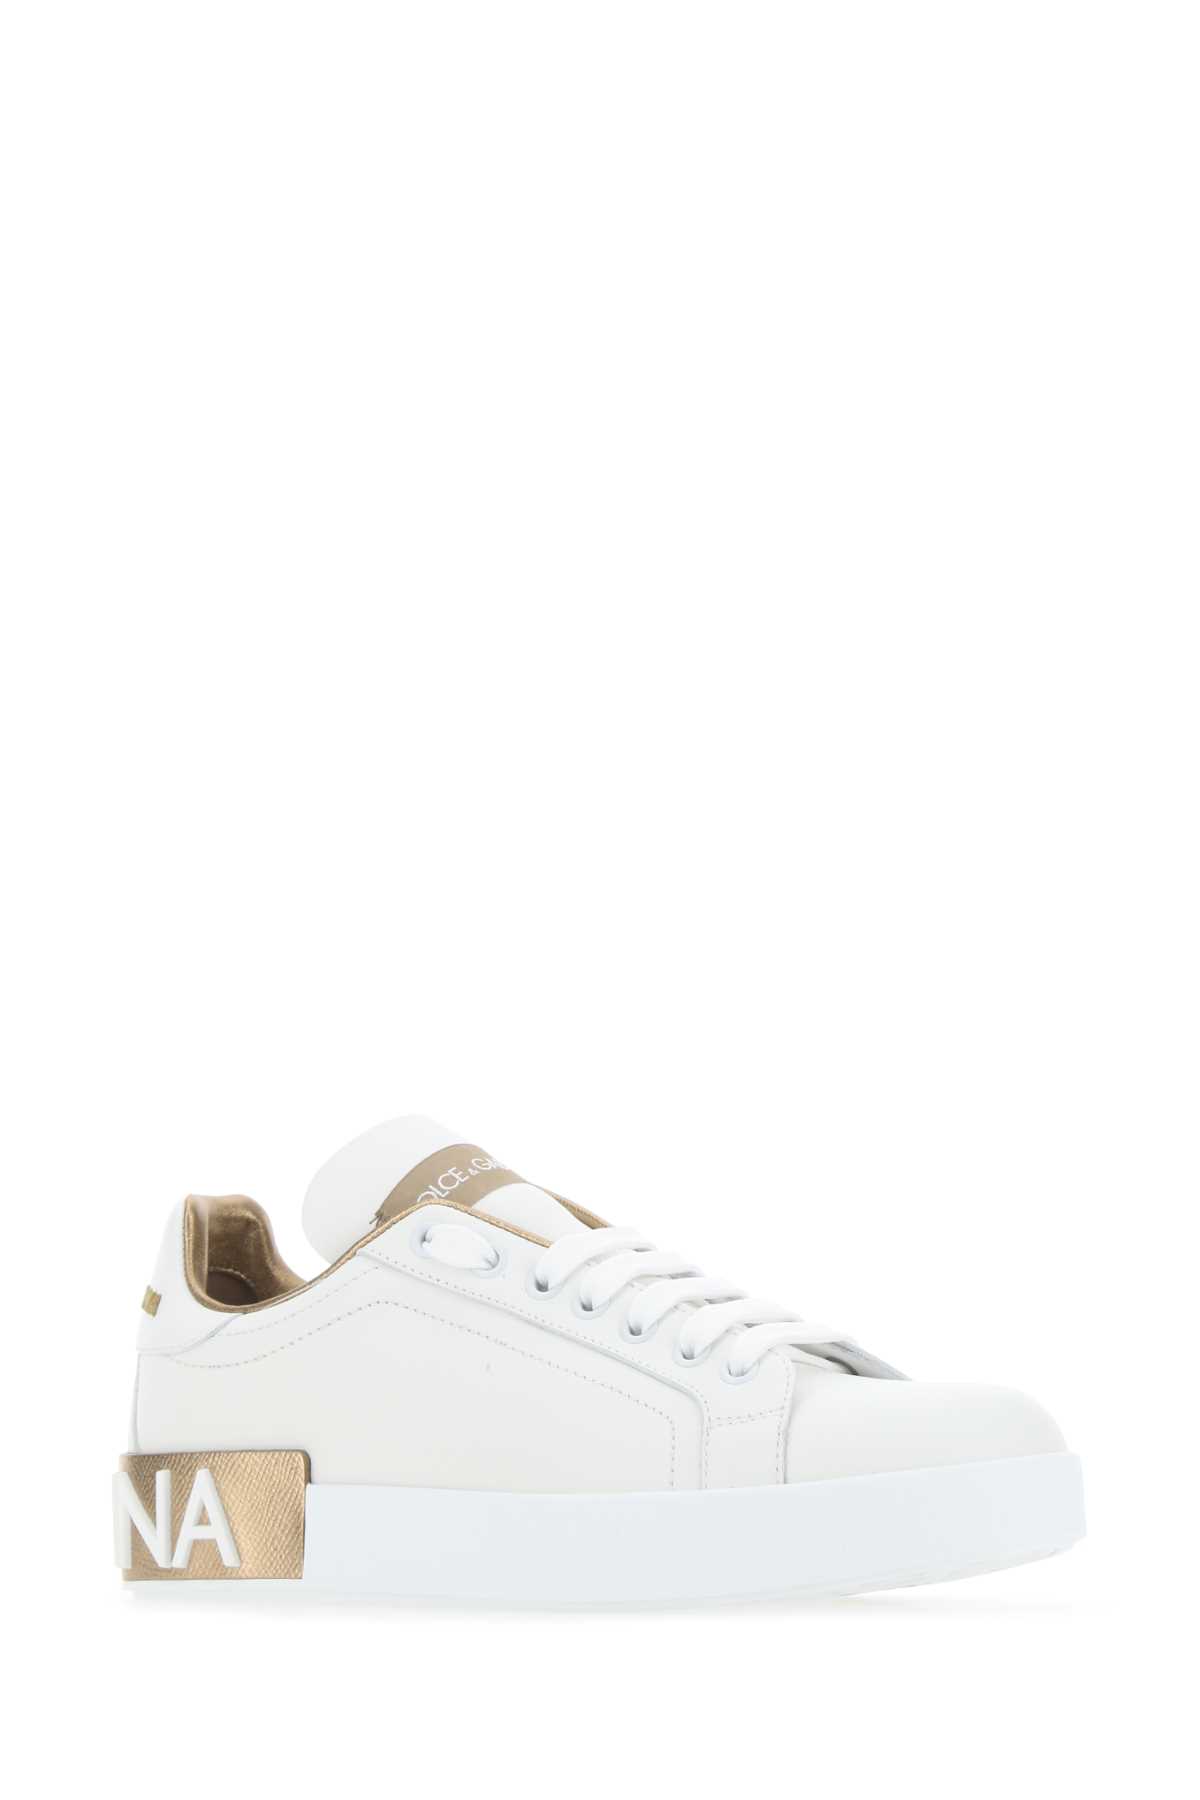 Dolce & Gabbana White Nappa Leather Portofino Sneakers In Oropolvere